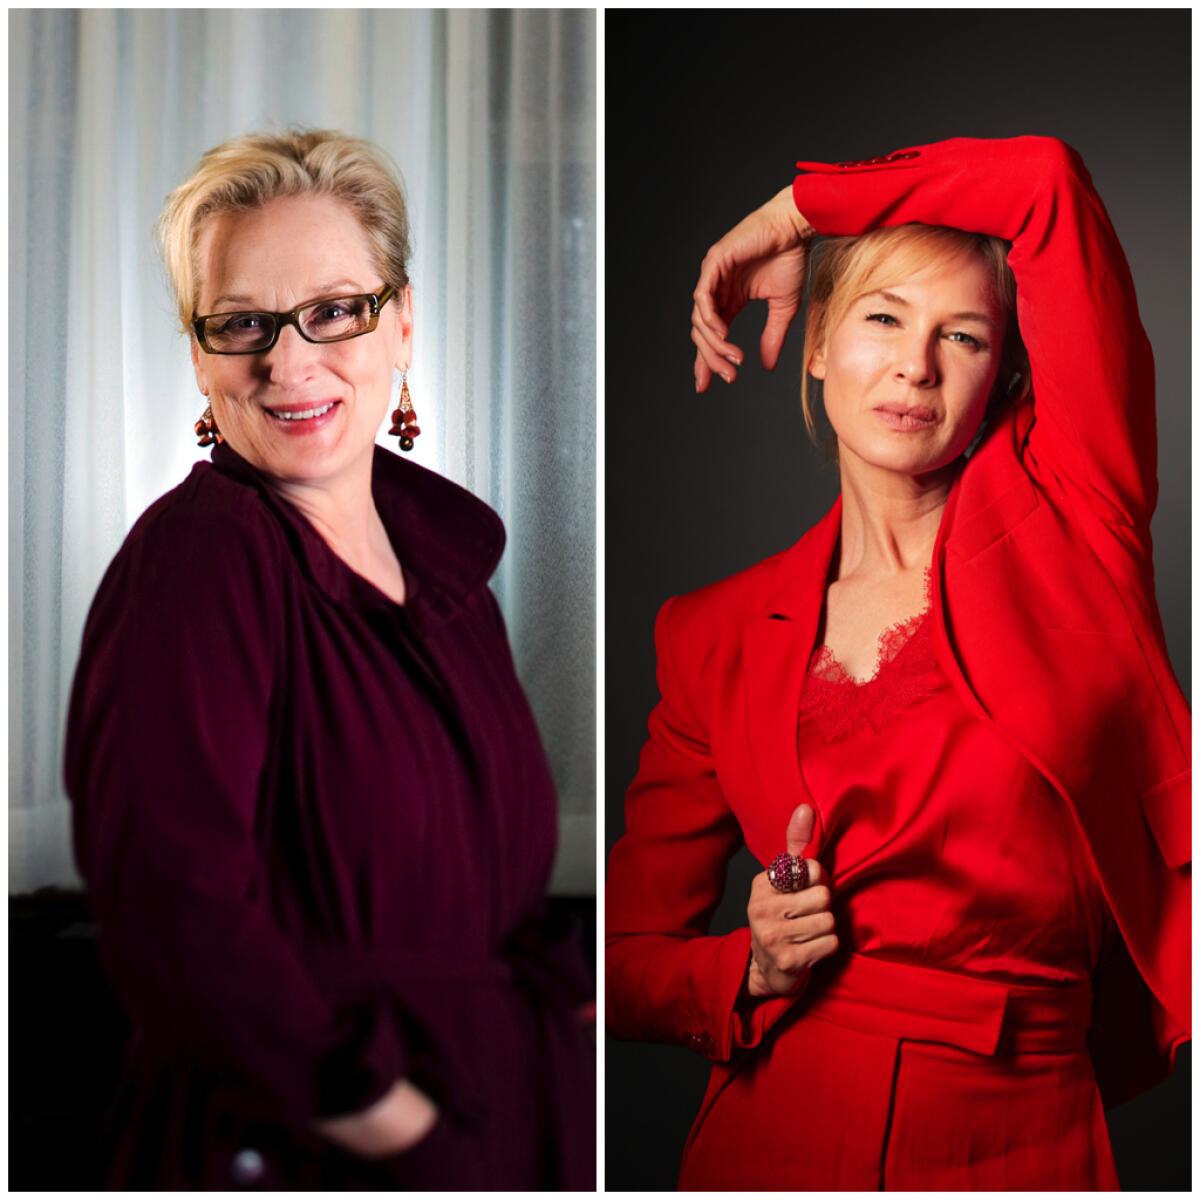 Portraits of Renée Zellweger and Meryl Streep